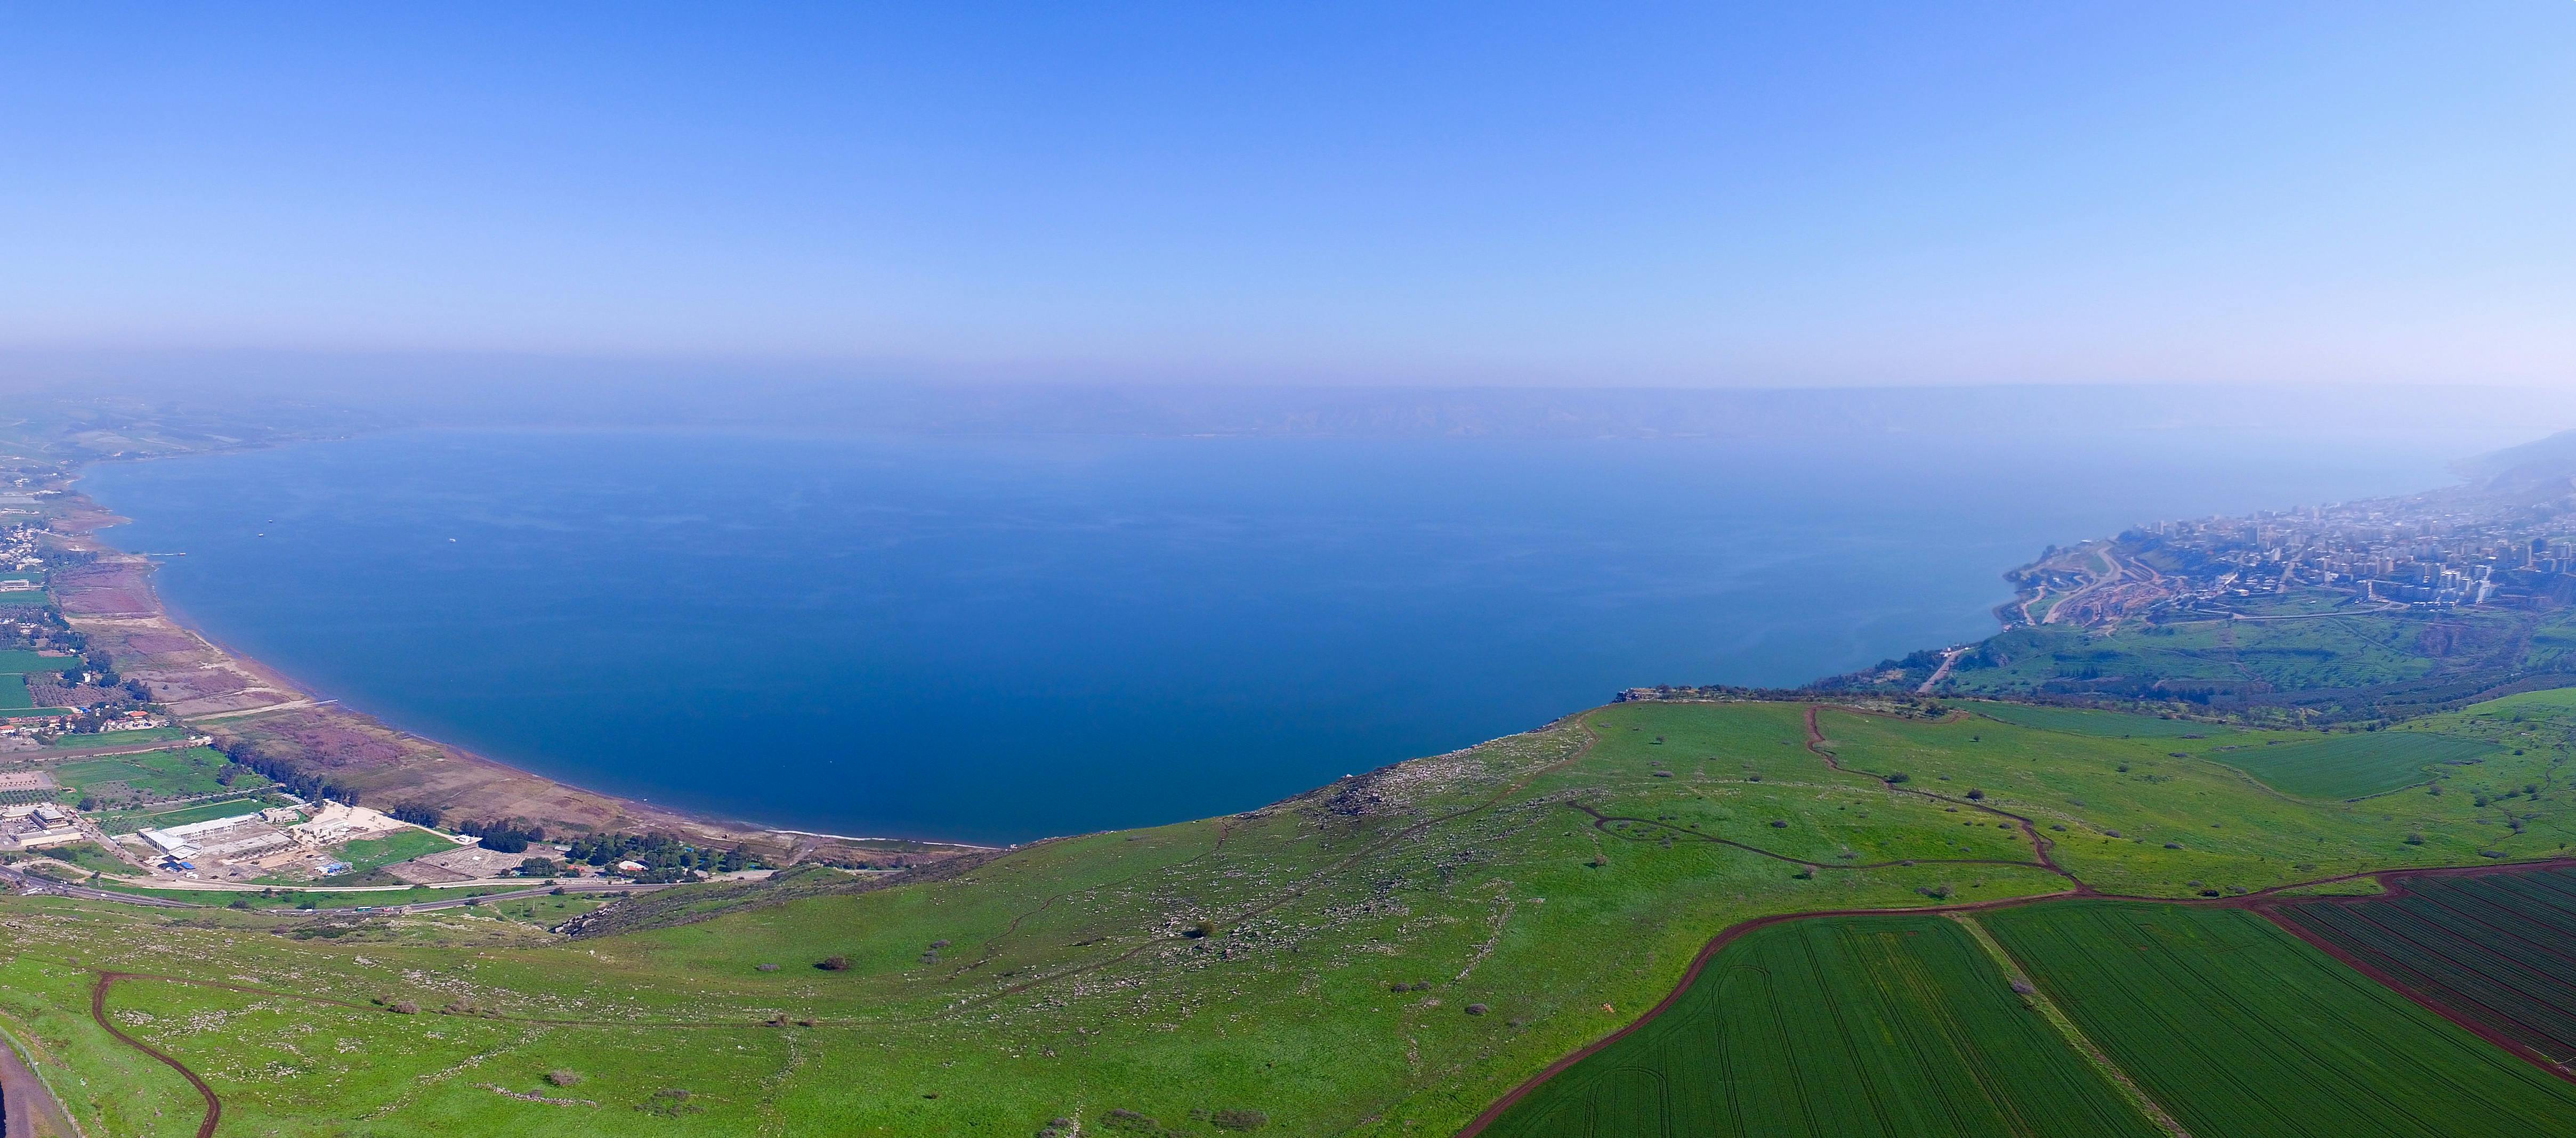 Sea of Galilee 3.jpg